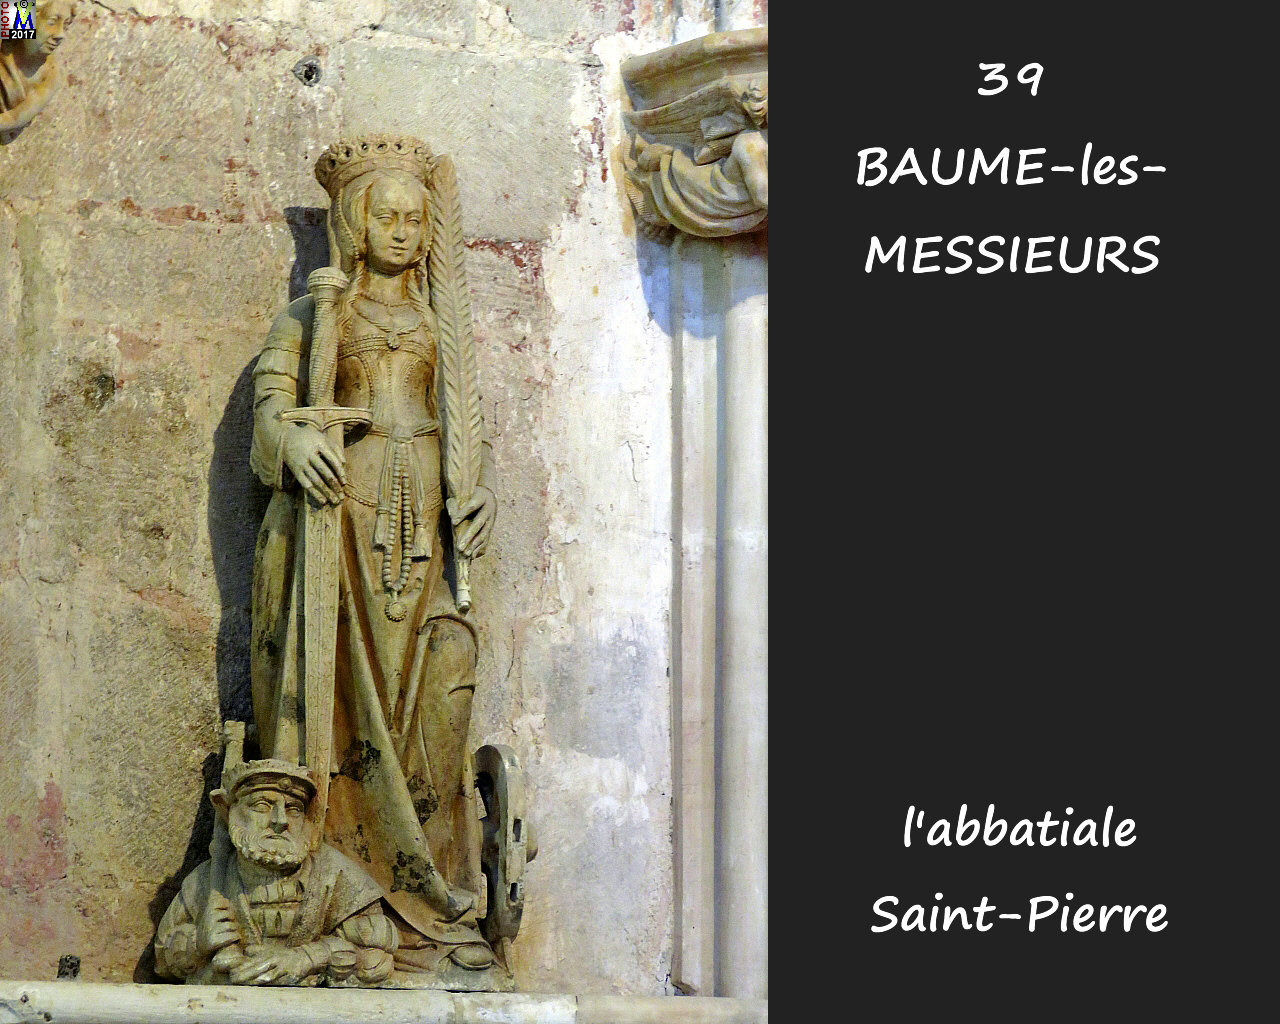 39BAUME-LES-MESSIEURS_abbatiale_284.jpg